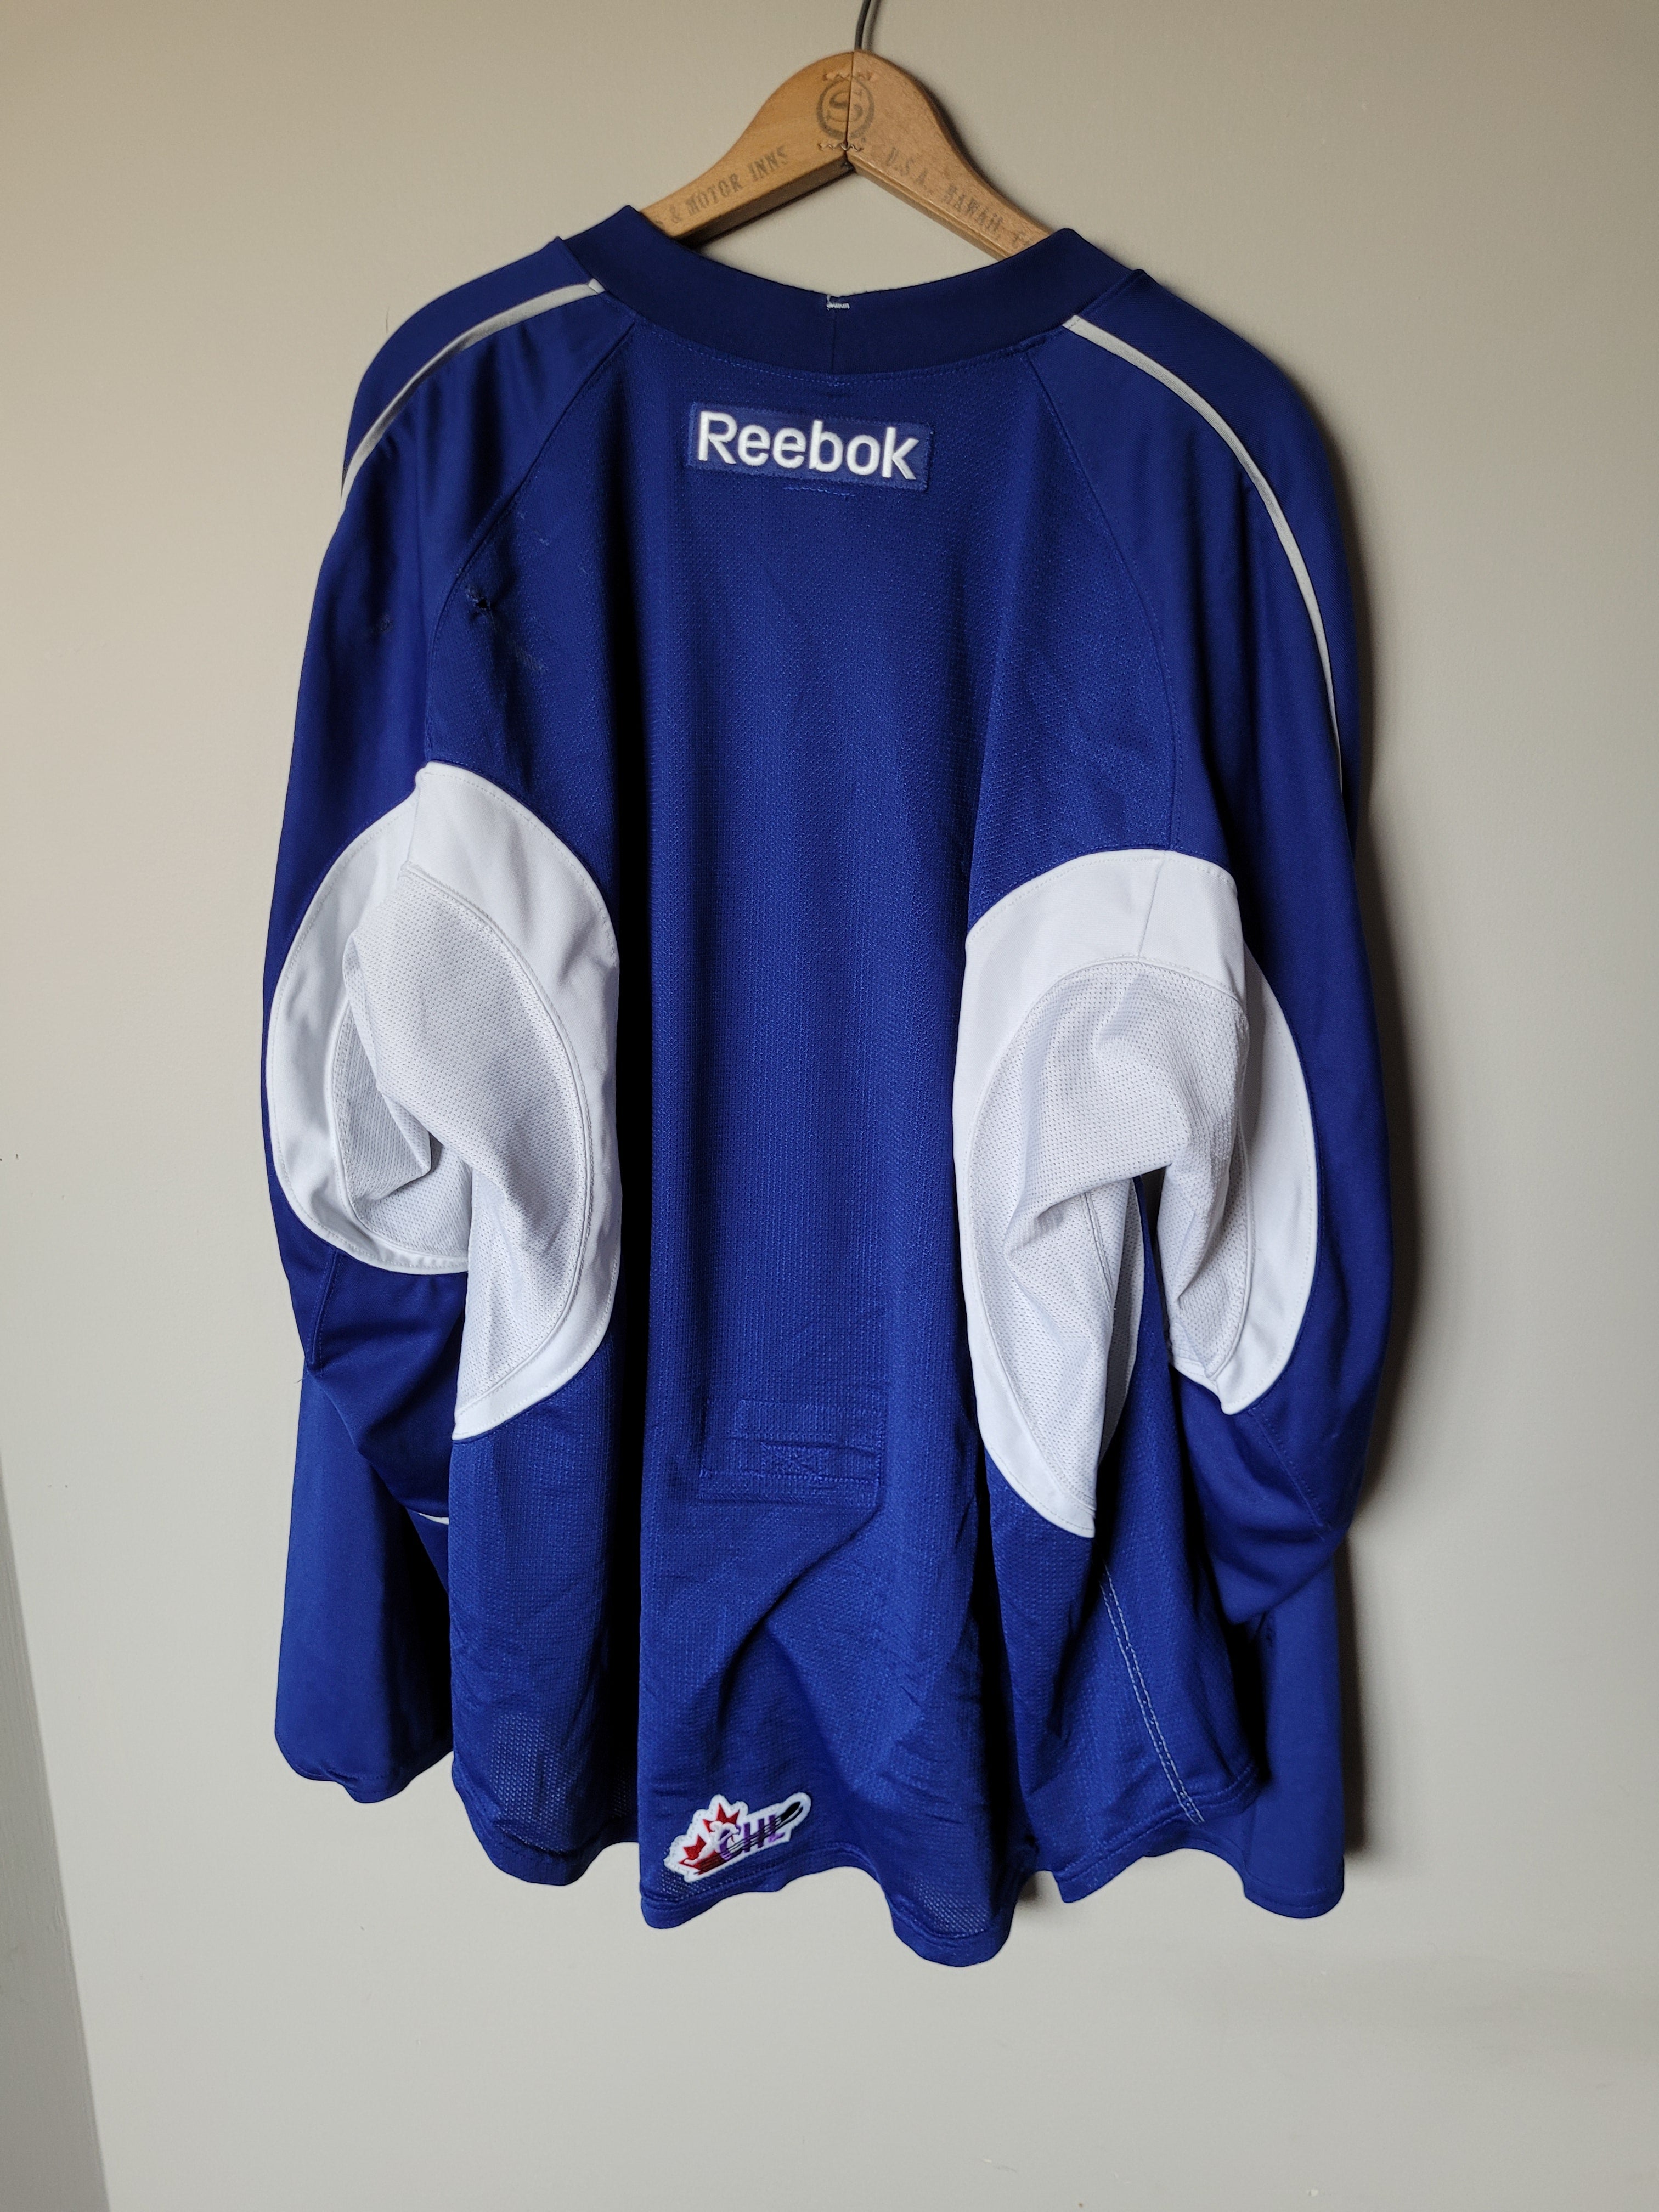 Reebok 3.0 Practice Jersey size 56 Oilers Black - Jerseys, Socks & Apparel  - For Sale - Pro Stock Hockey 